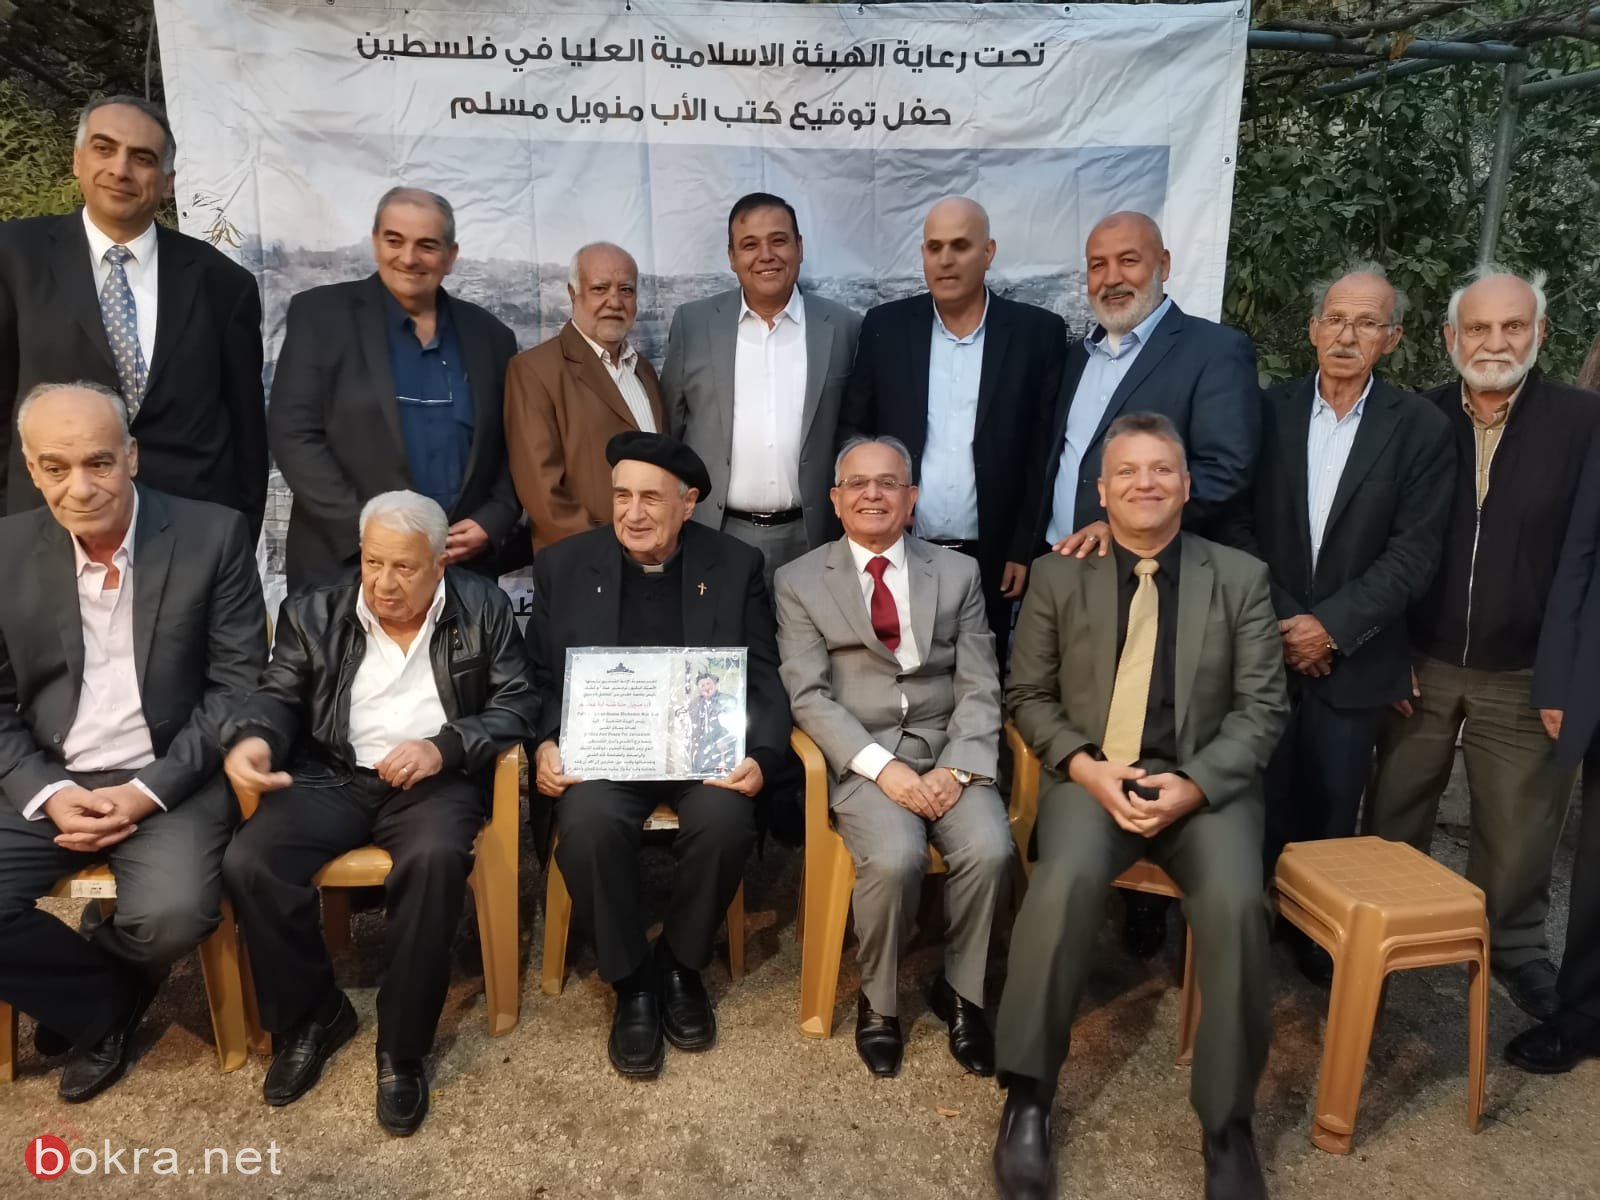 مجموعة الاخوة المقدسيين تكرم الأب مناويل مسلم لمواقفه تجاه القدس وفلسطين-7